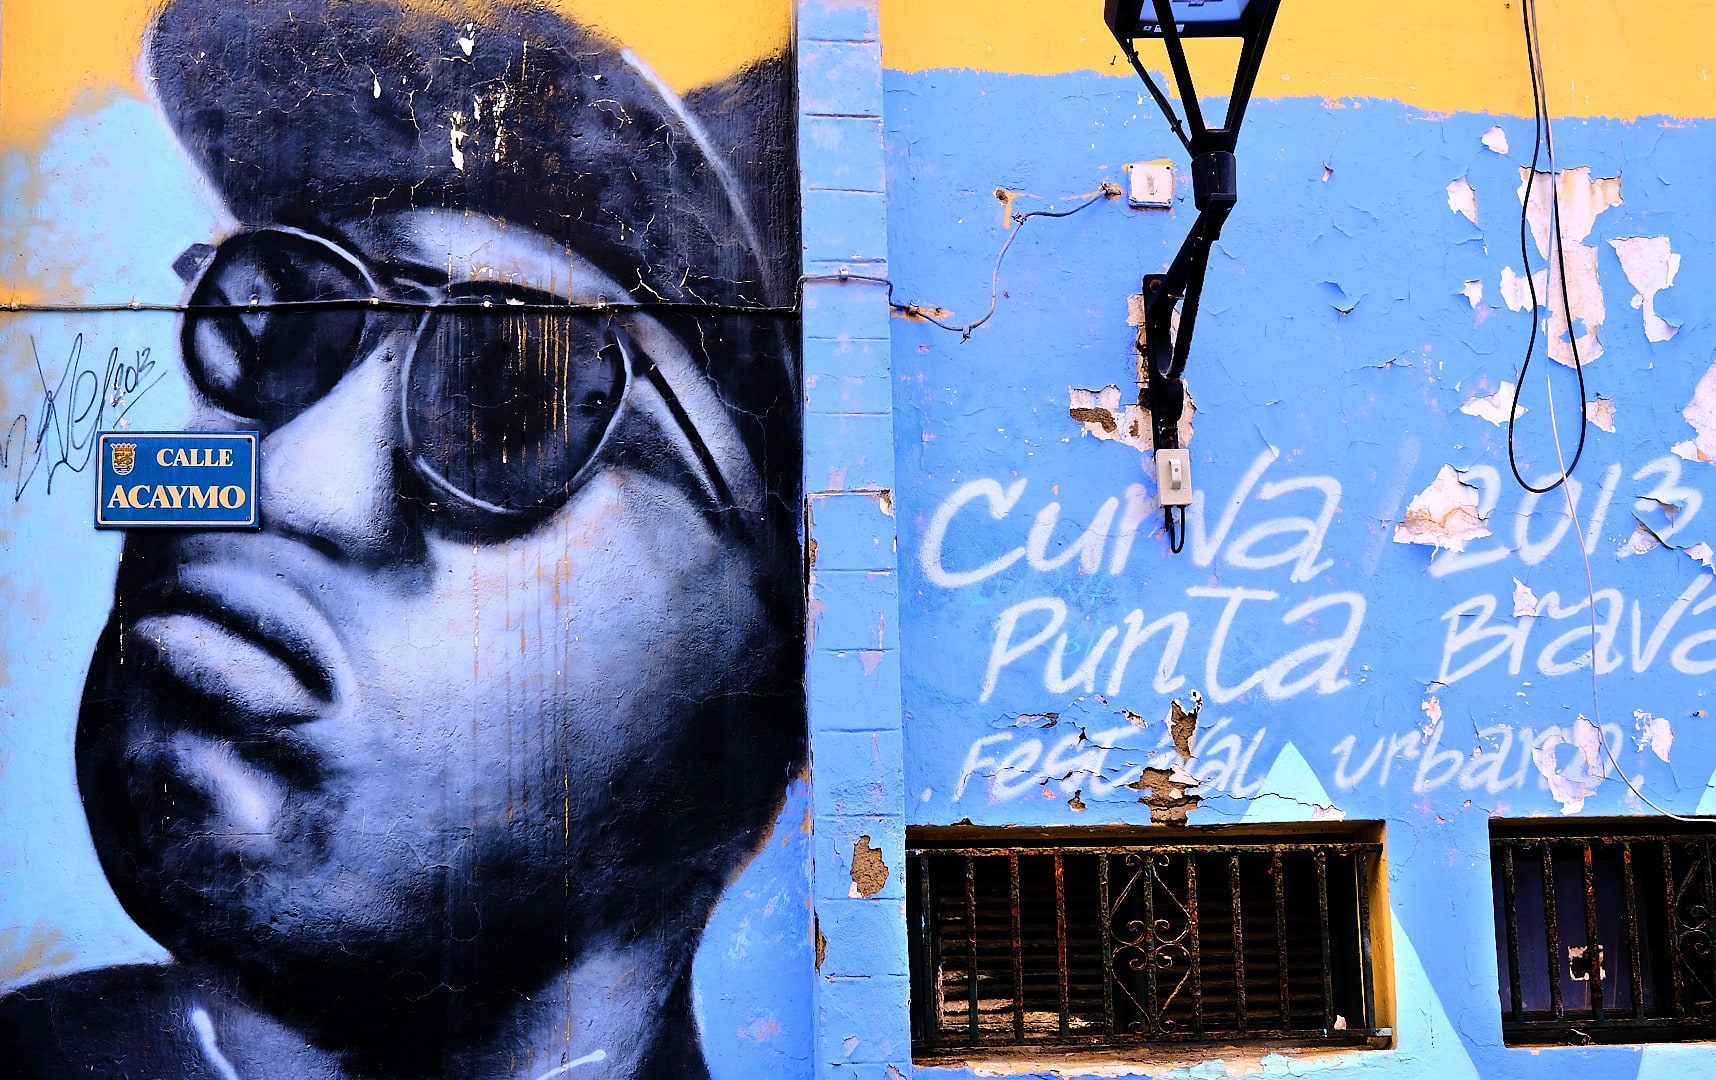 Street Art in Puerto de la Cruz